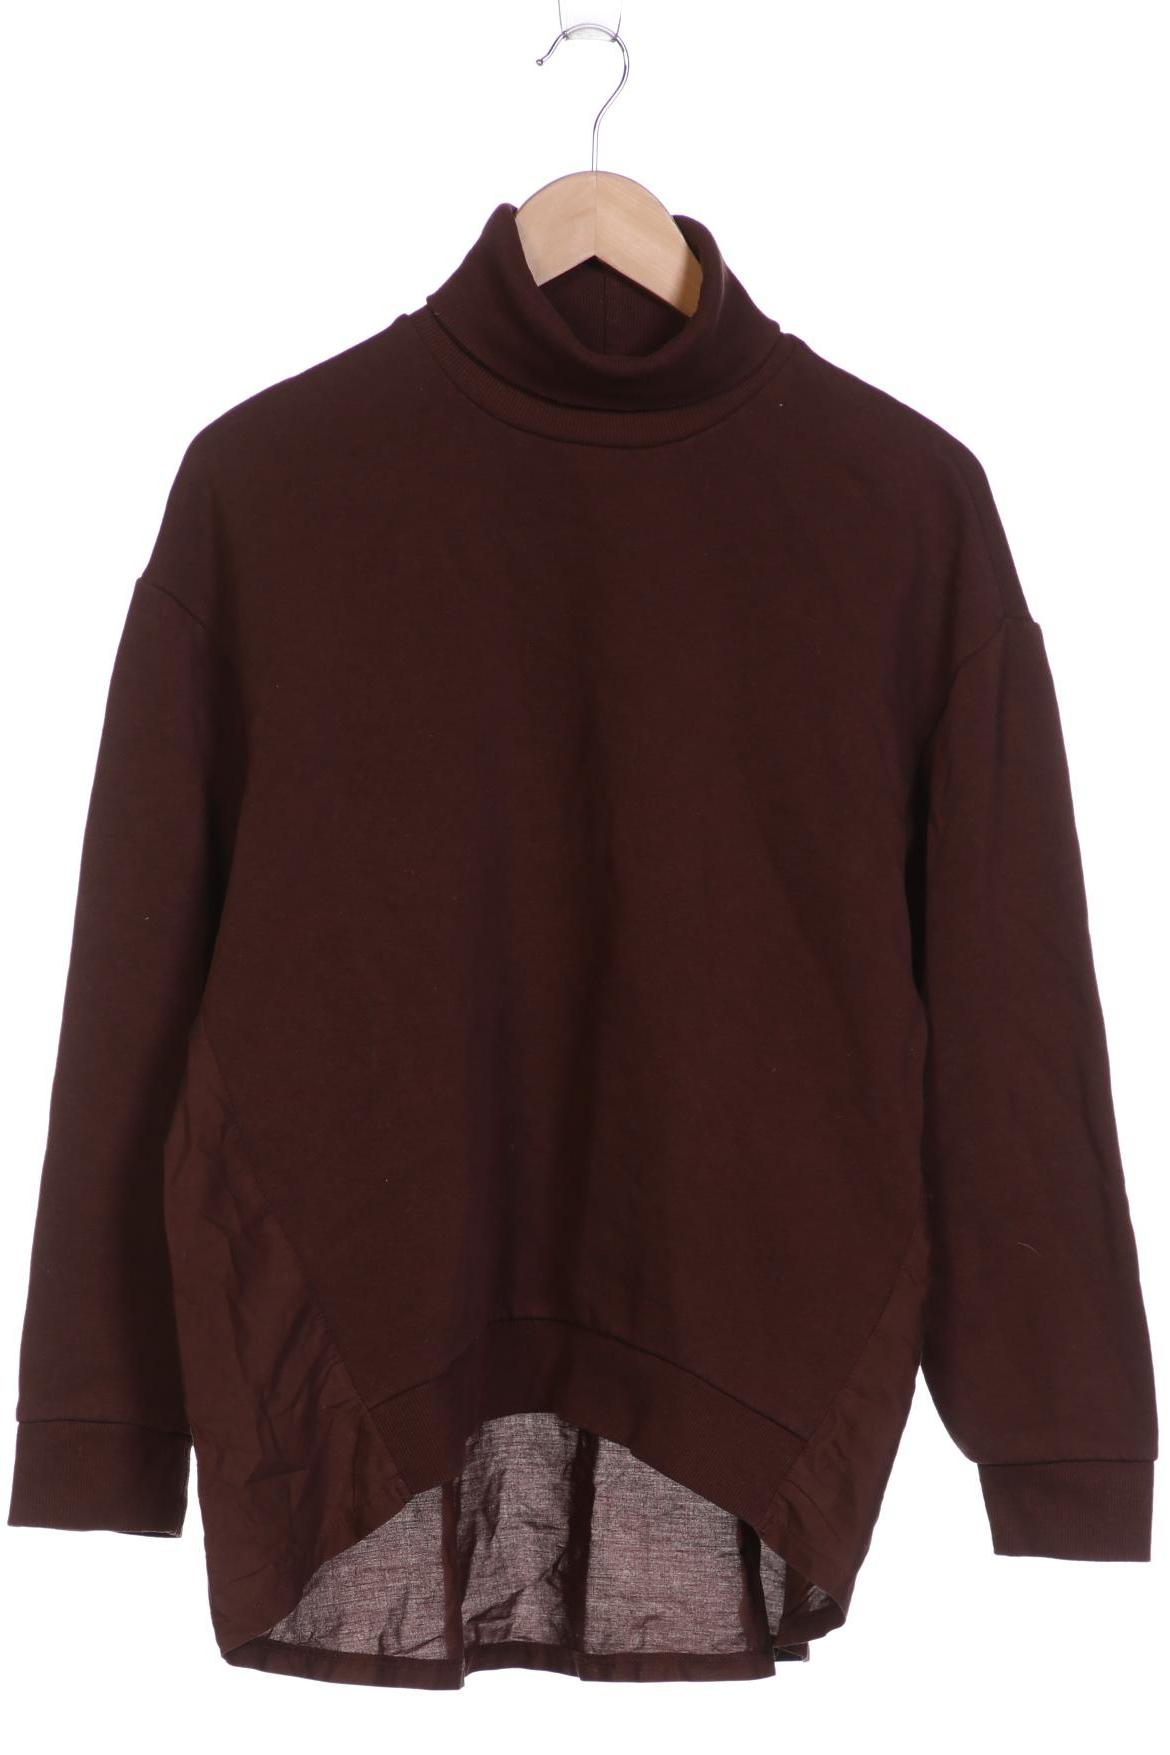 Zara Damen Sweatshirt, braun, Gr. 38 von ZARA